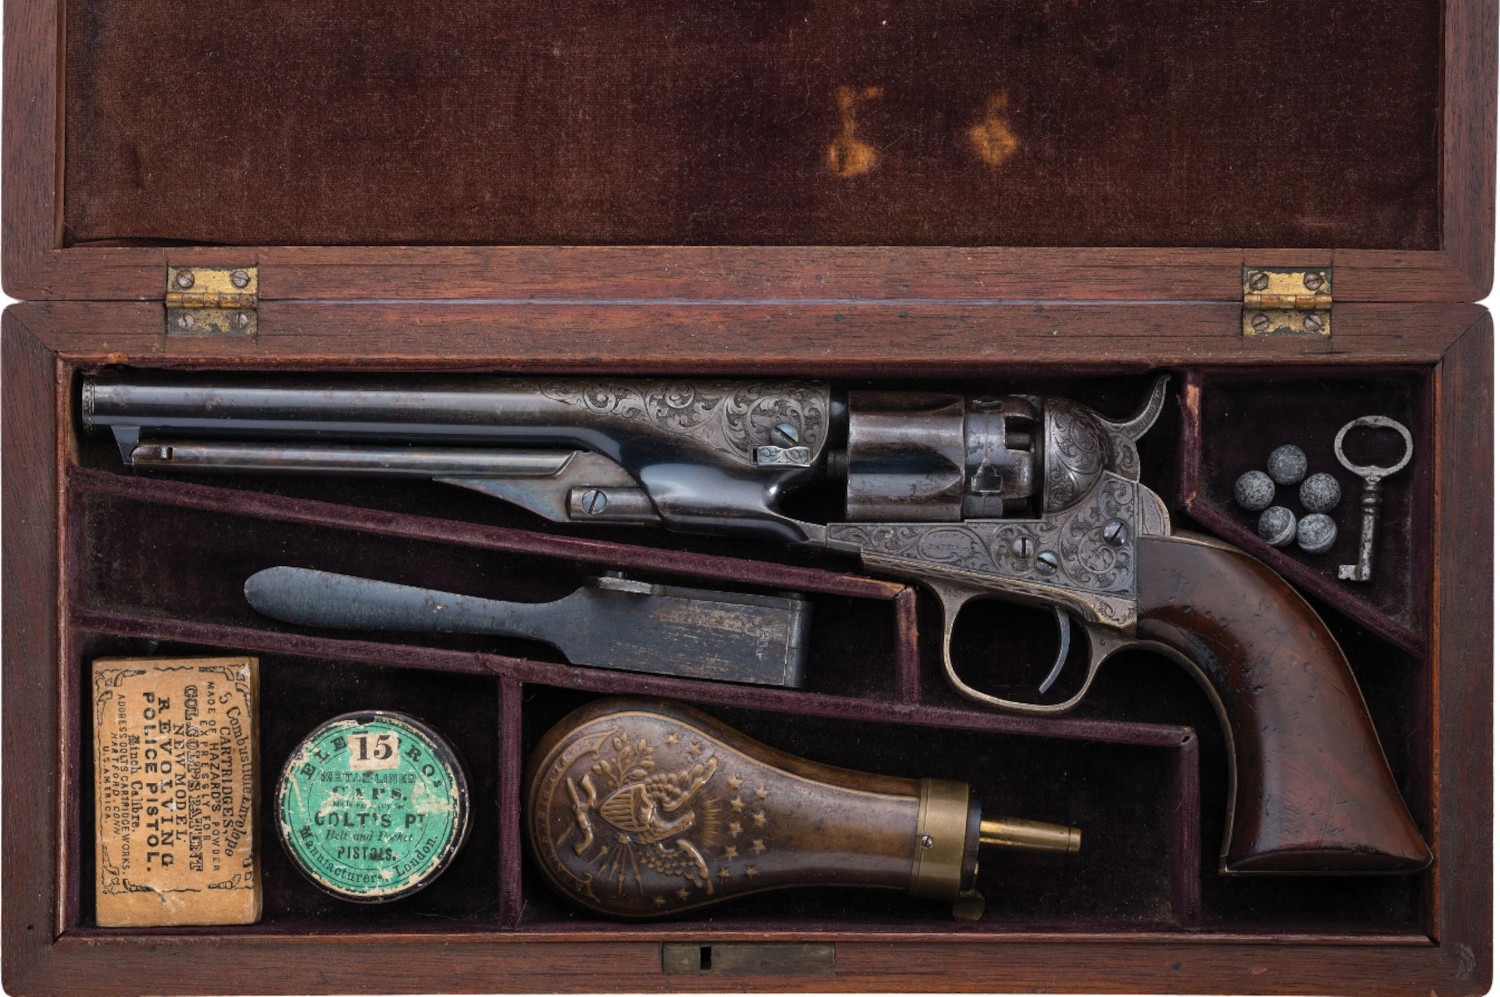 Cased Colt M1862 Police percussion revolver Civil War